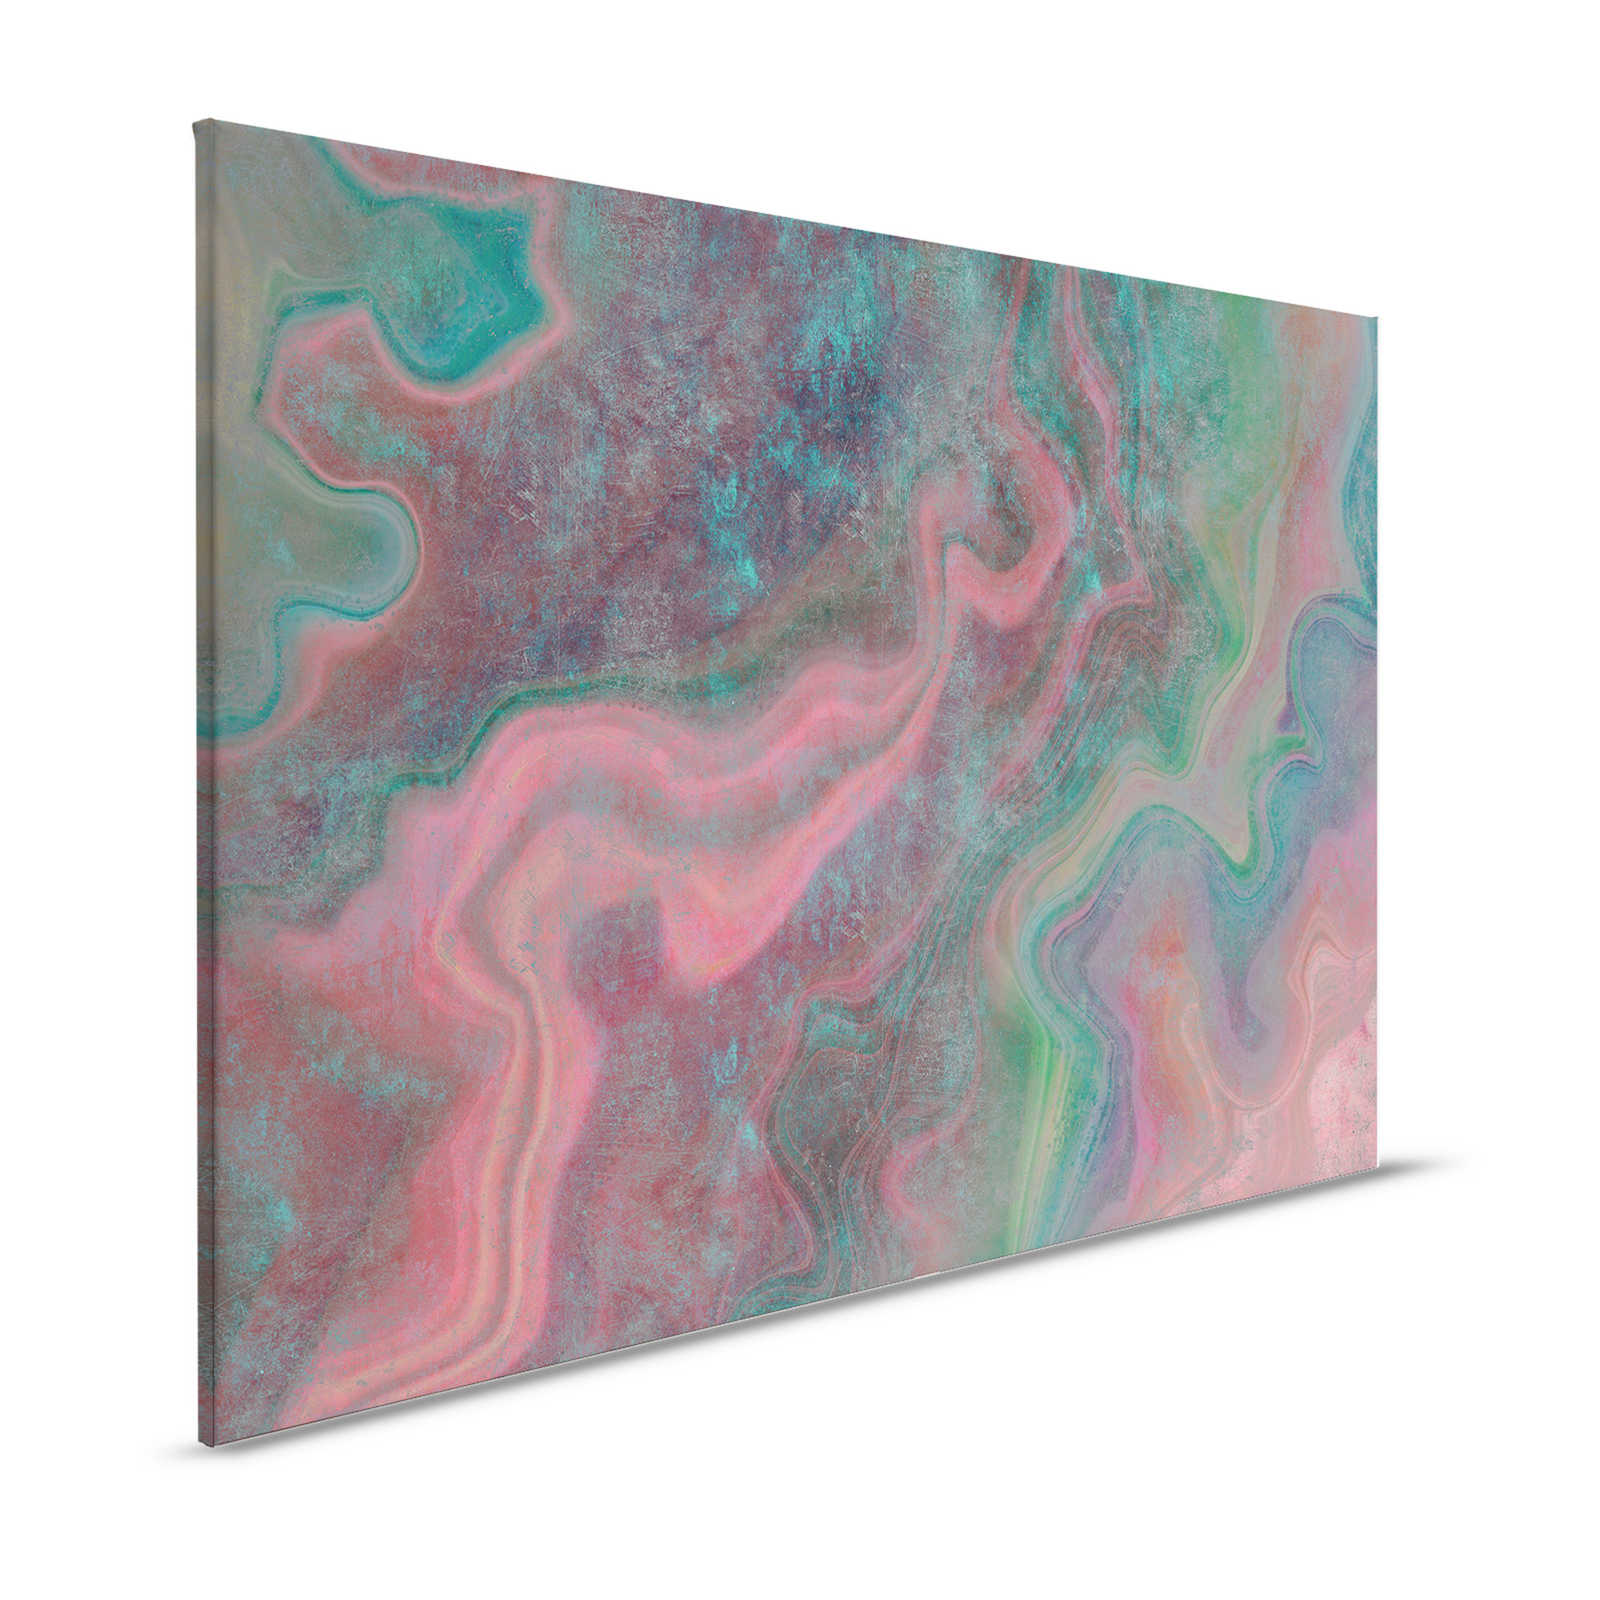 Mármol 1 - Mármol de colores como cuadro de lienzo de realce con estructura rayada - 1,20 m x 0,80 m
